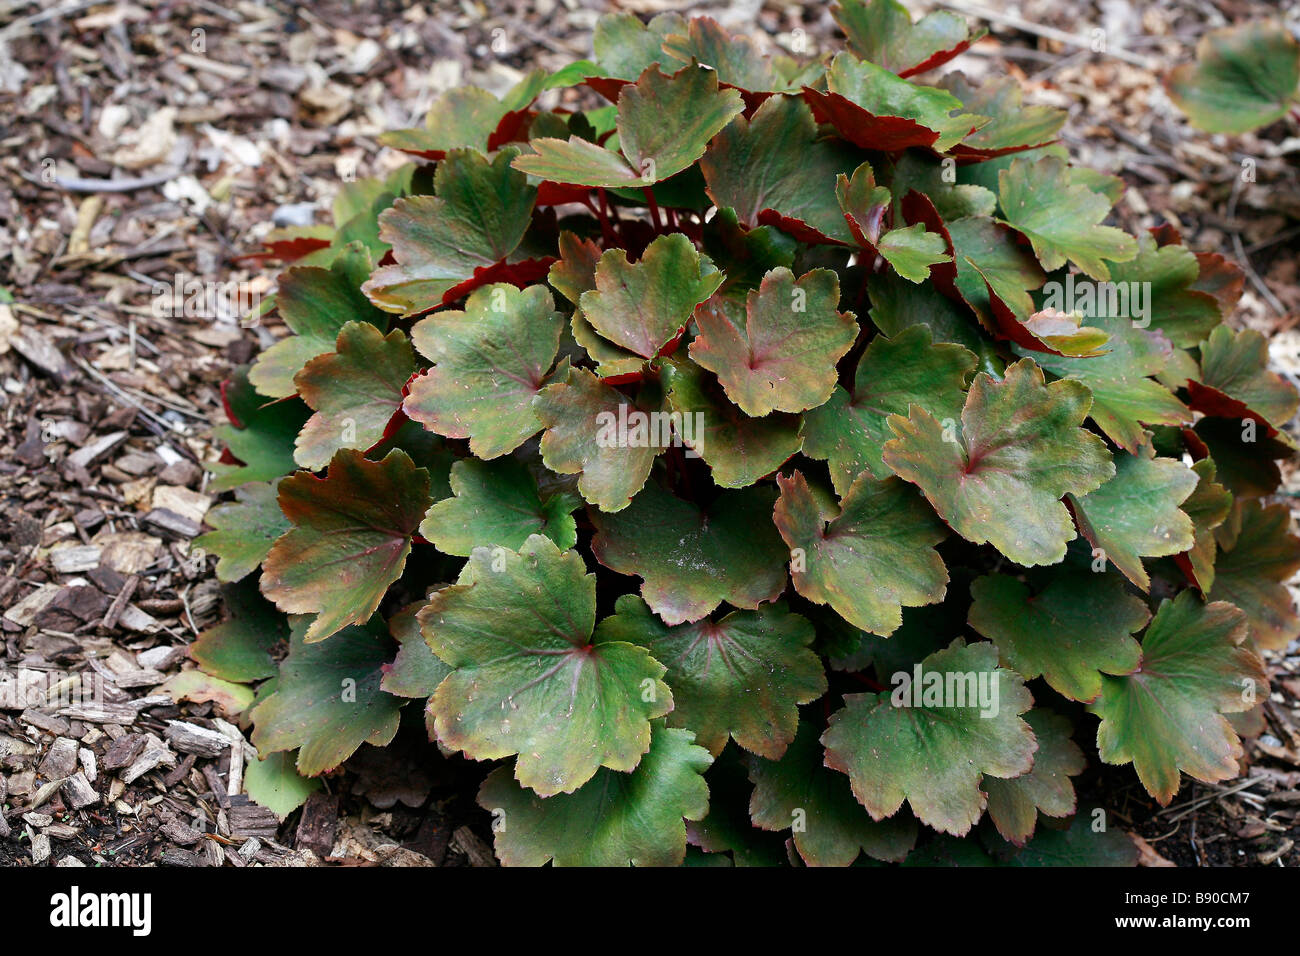 Saxifraga fortunei "Rubrifolia" Stock Photo